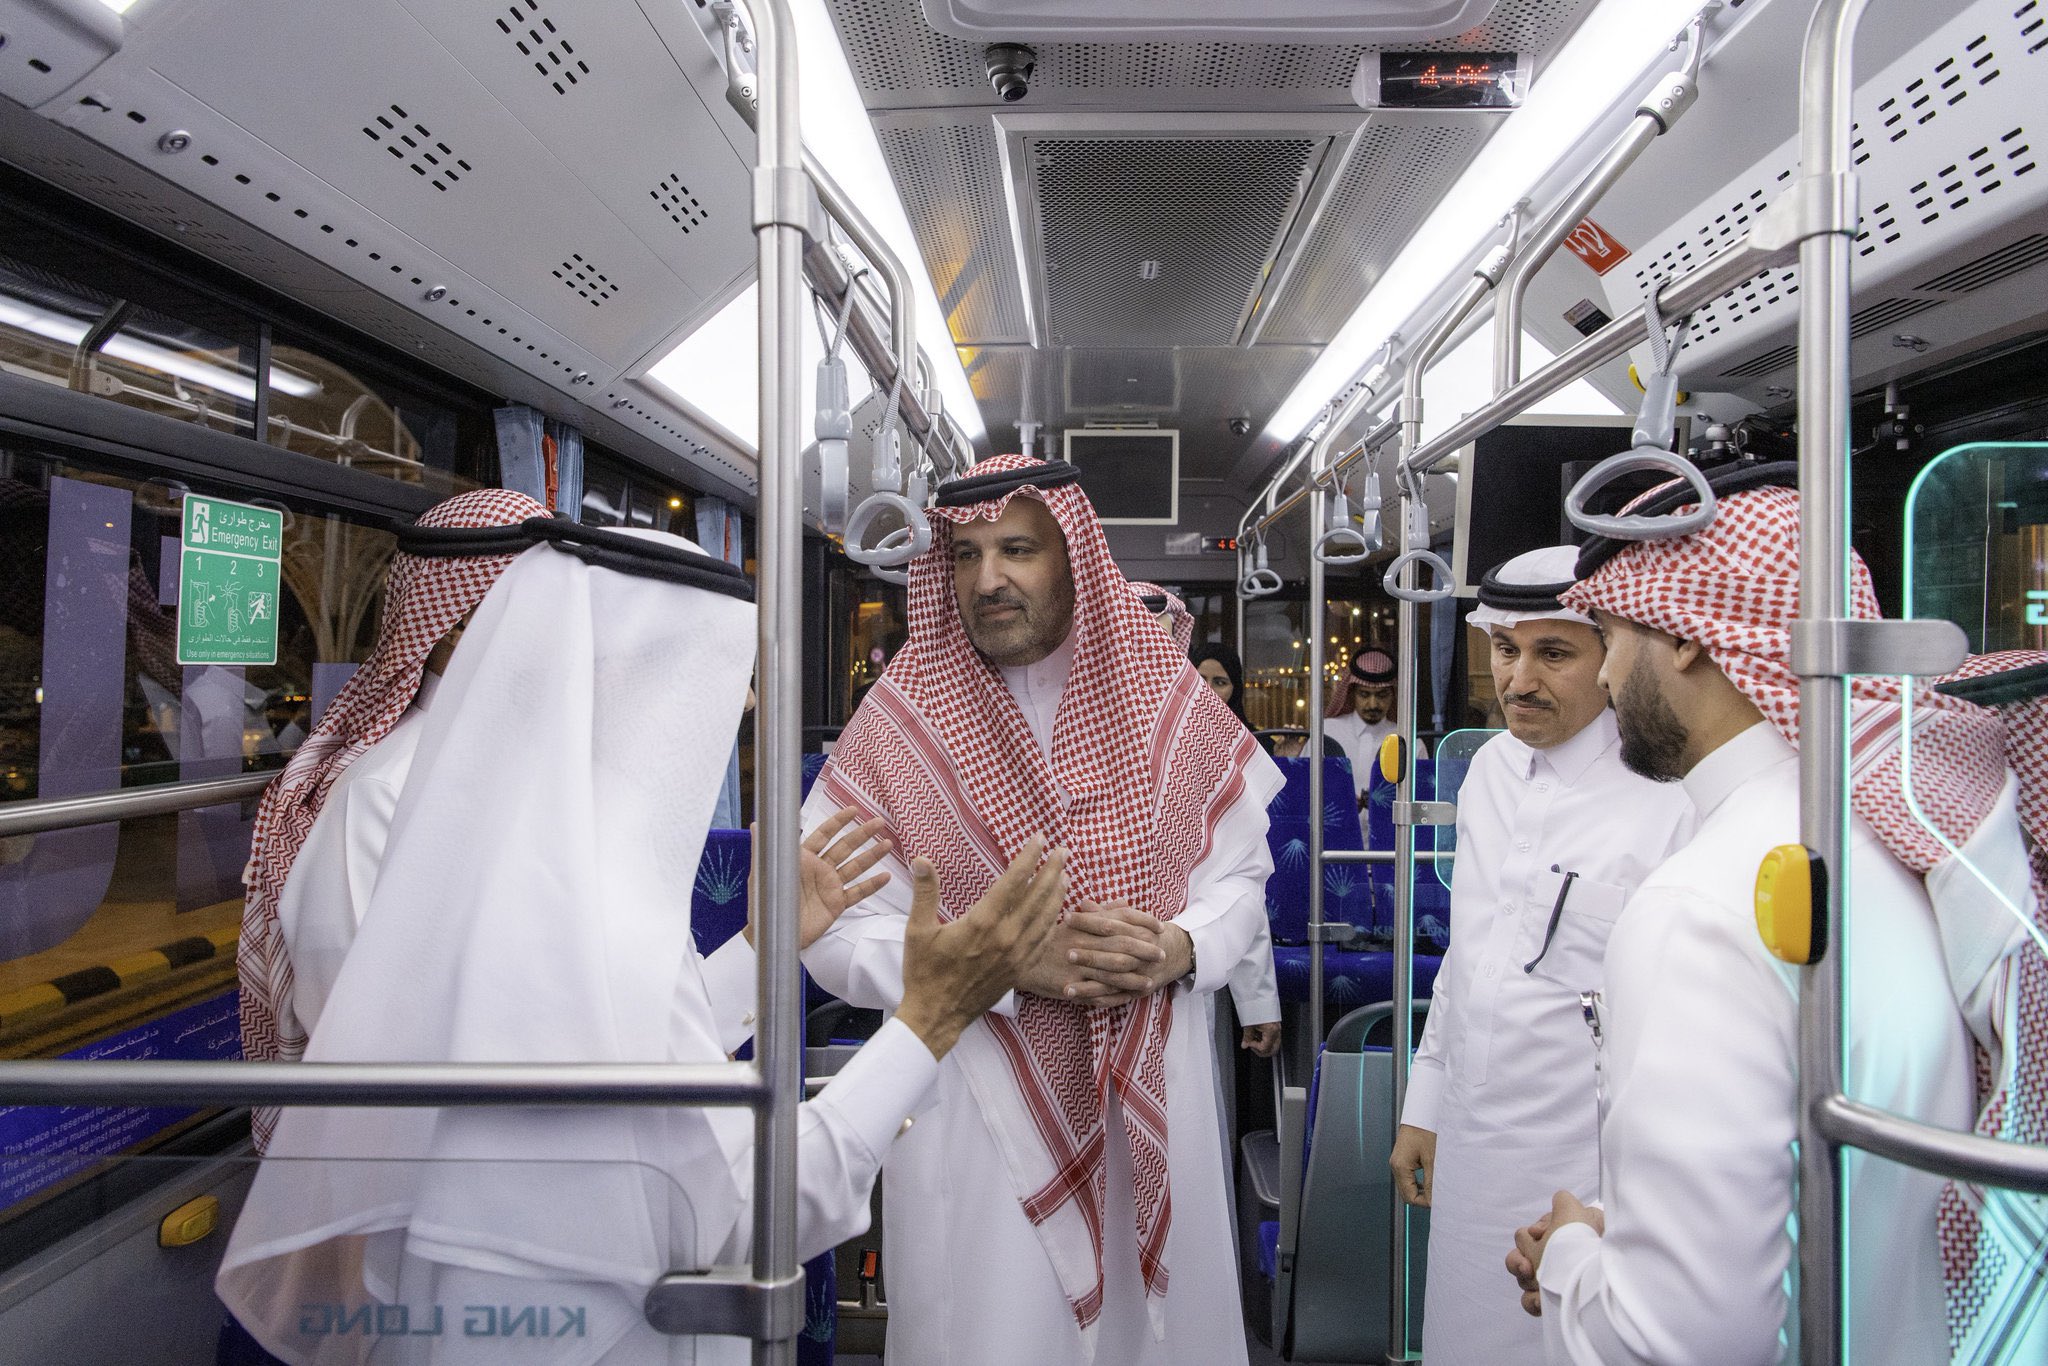 سمو الأمير فيصل بن سلمان يدشن الحافلة الكهربائية بالمدينة المنورة